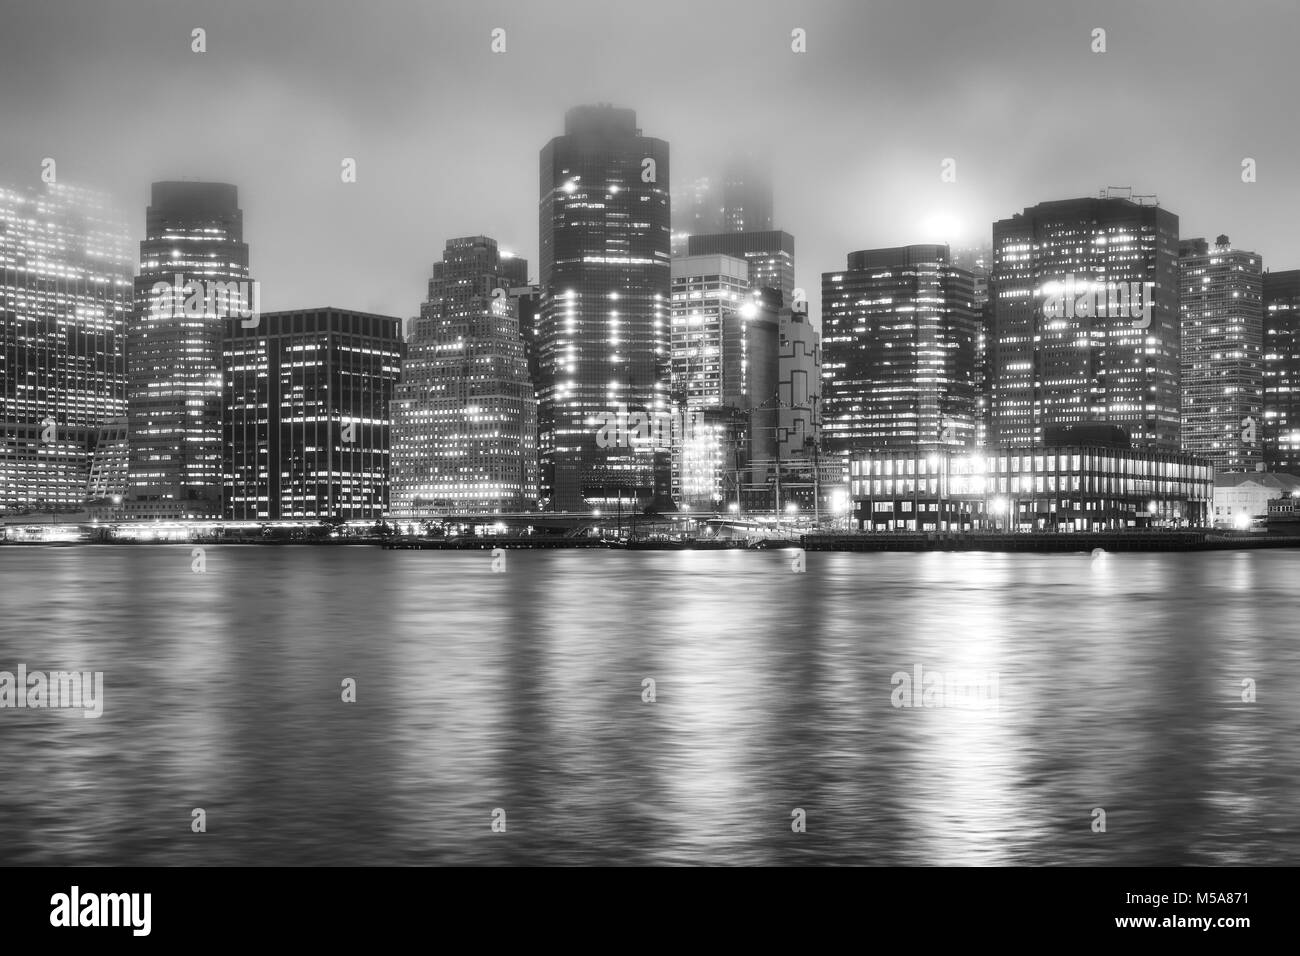 Photo noir et blanc de la Manhattan sur une nuit brumeuse, New York City, USA. Banque D'Images